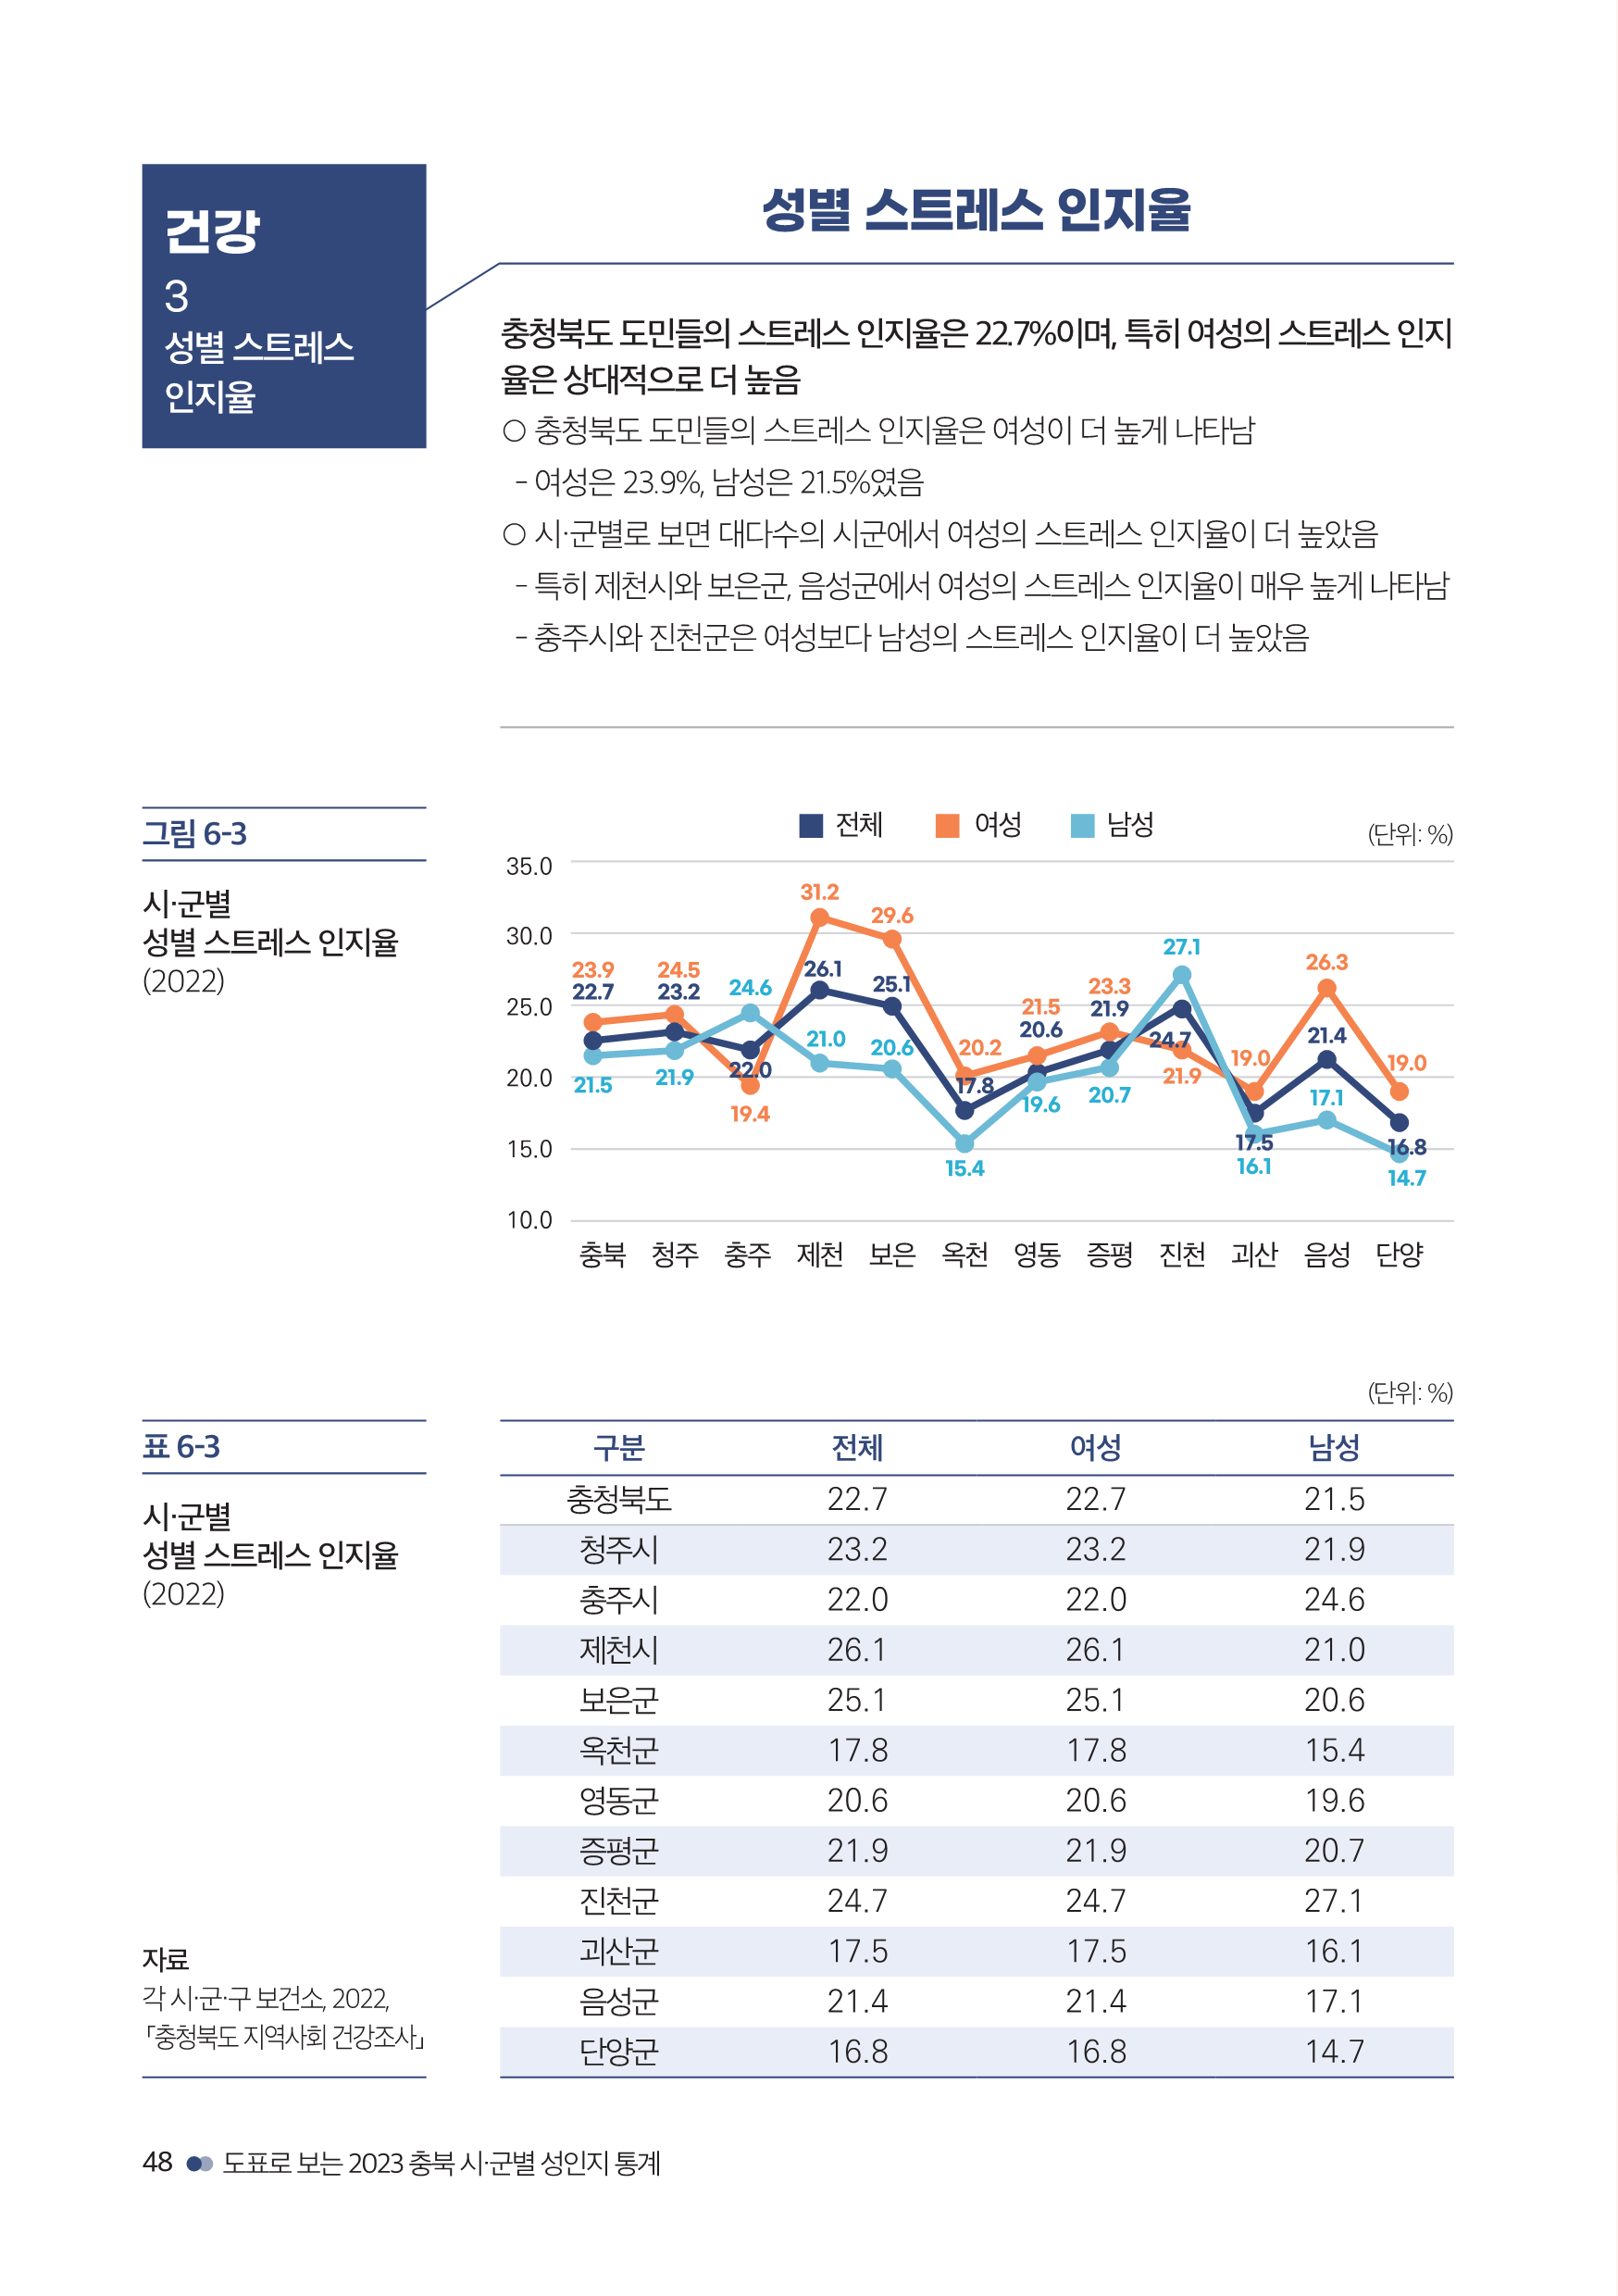 충북여성재단-성인지통계(인포)_웹용_50.png